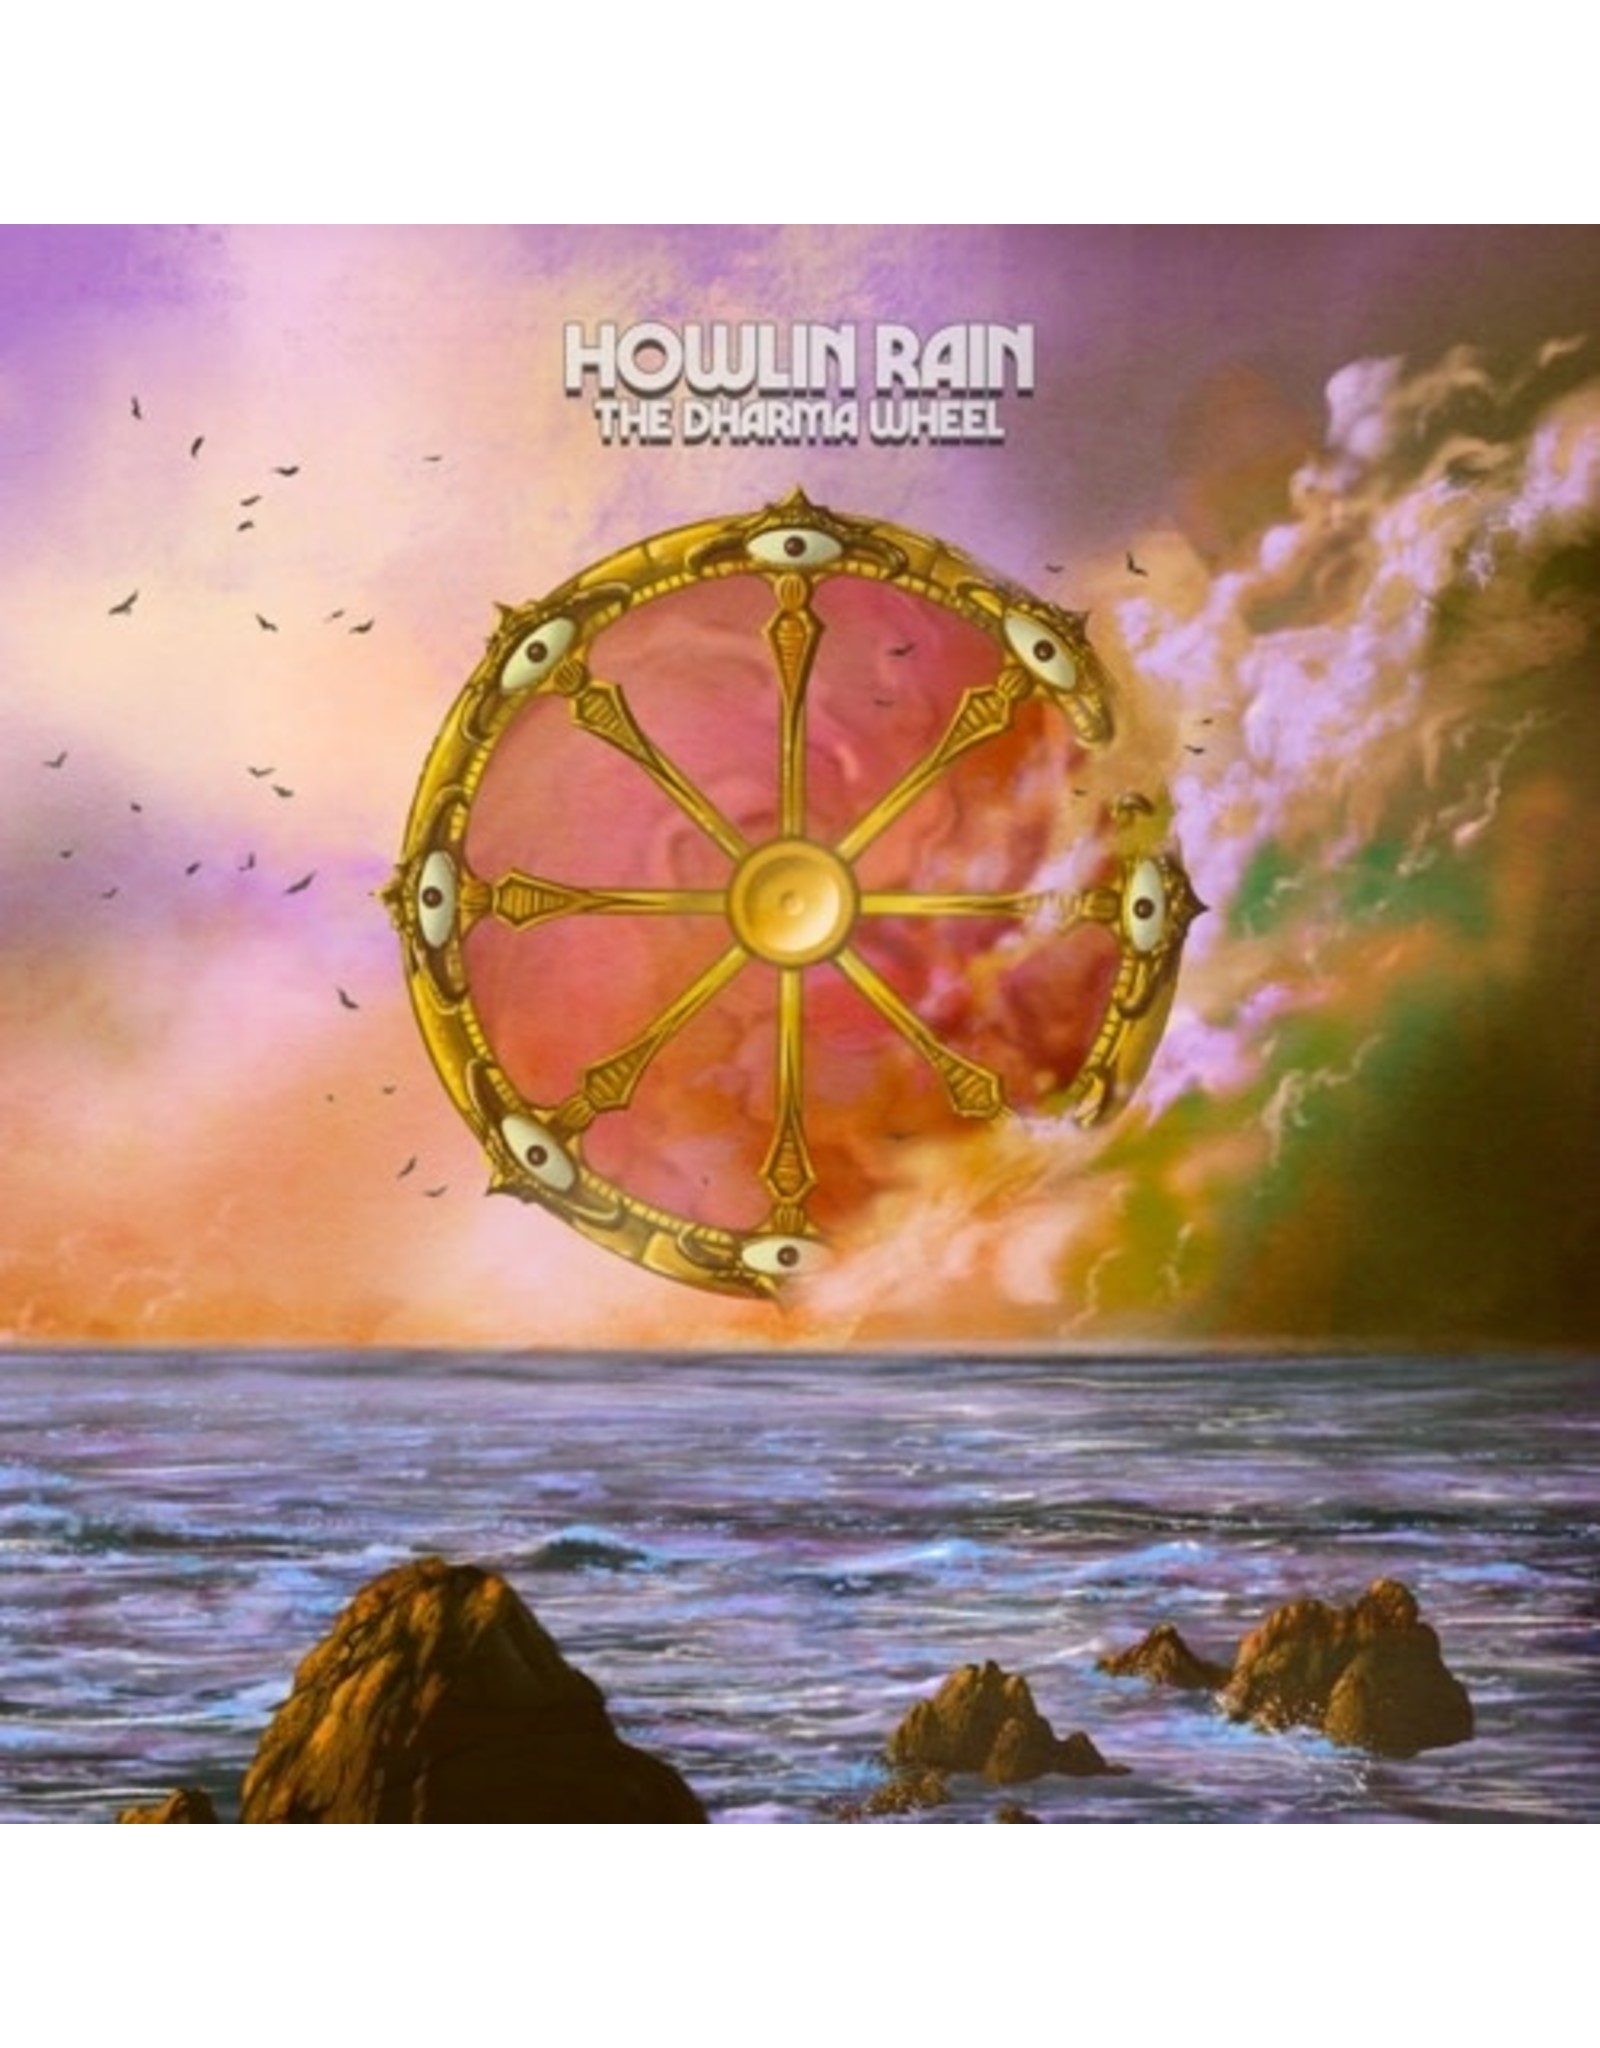 Silver Current Howlin' Rain: The Dharma Wheel (color) LP